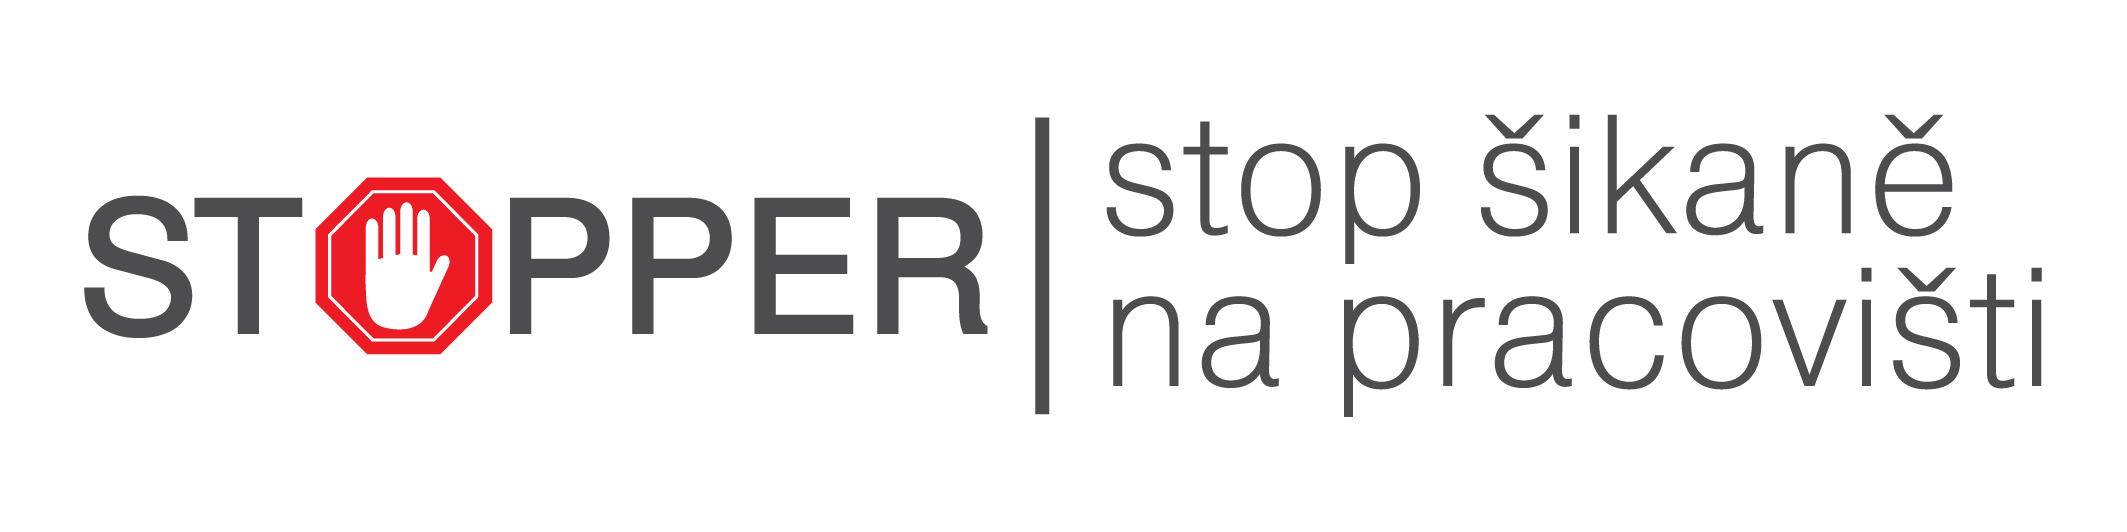 Logo stopper